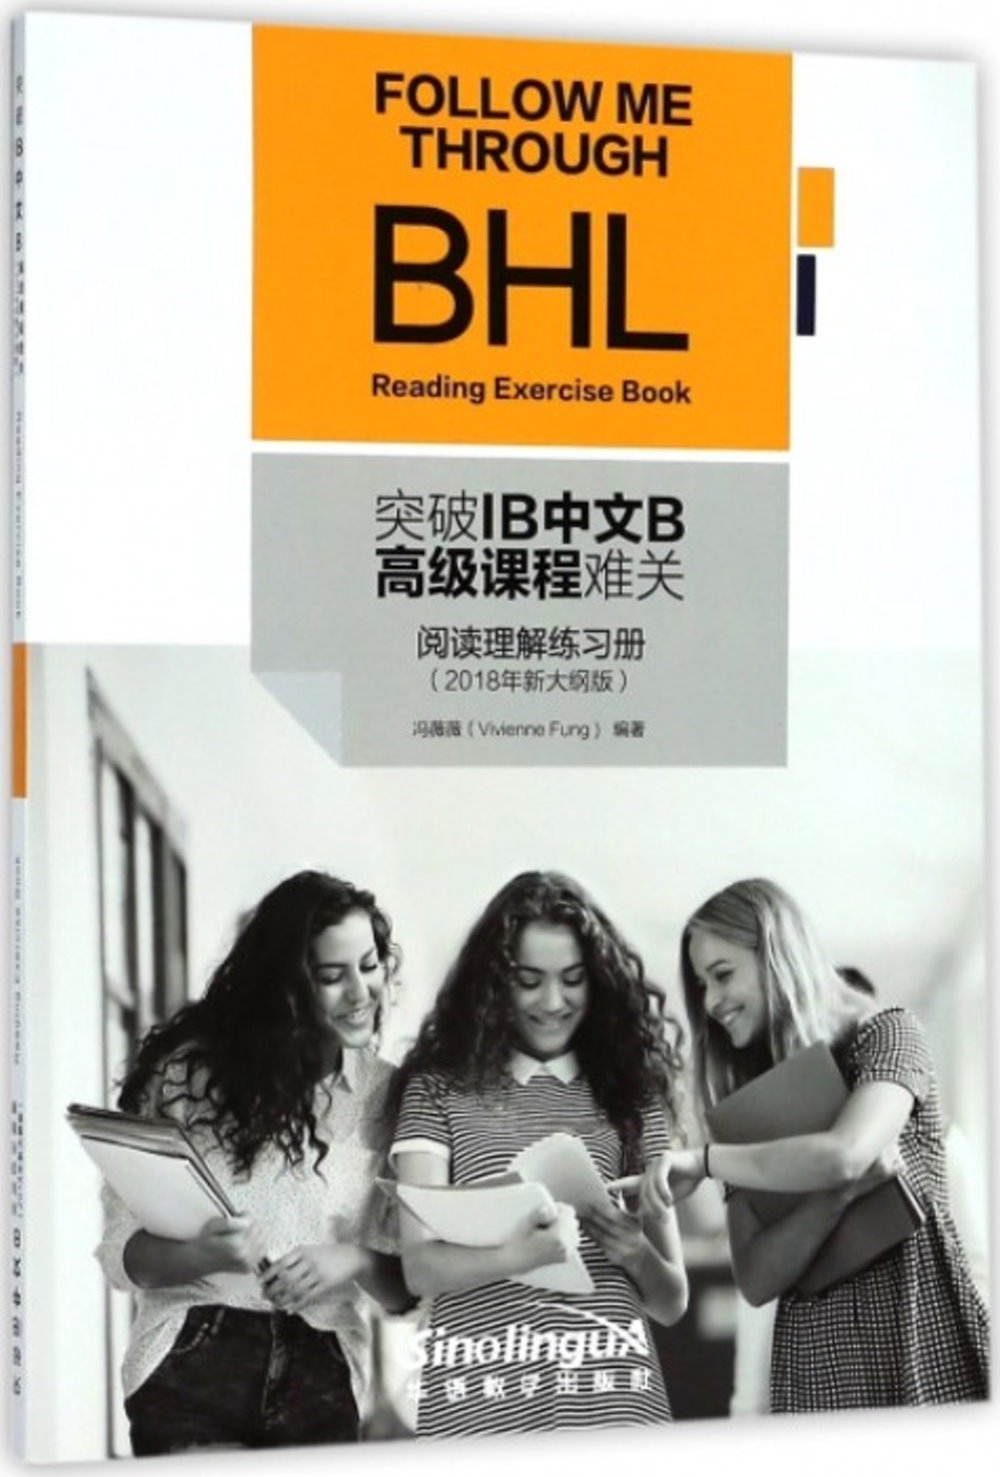 突破IB中文B高級課程難關·閱讀理解練習冊（2018年新大綱版）